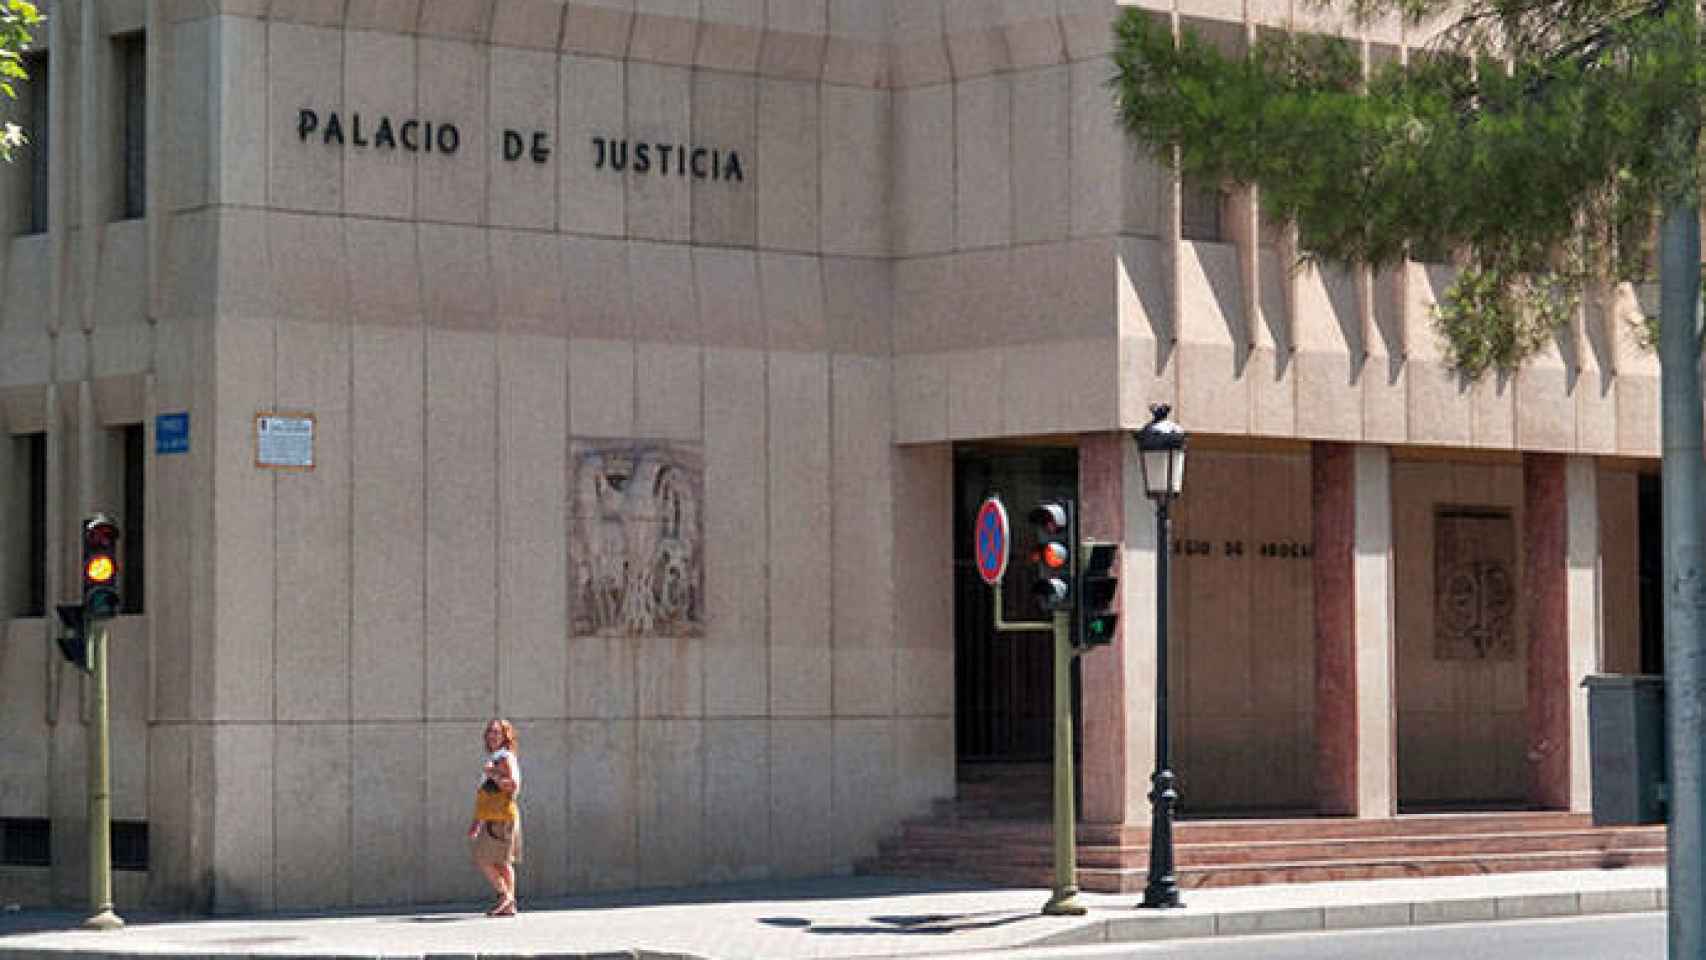 FOTO: Palacio de Justicia de Albacete